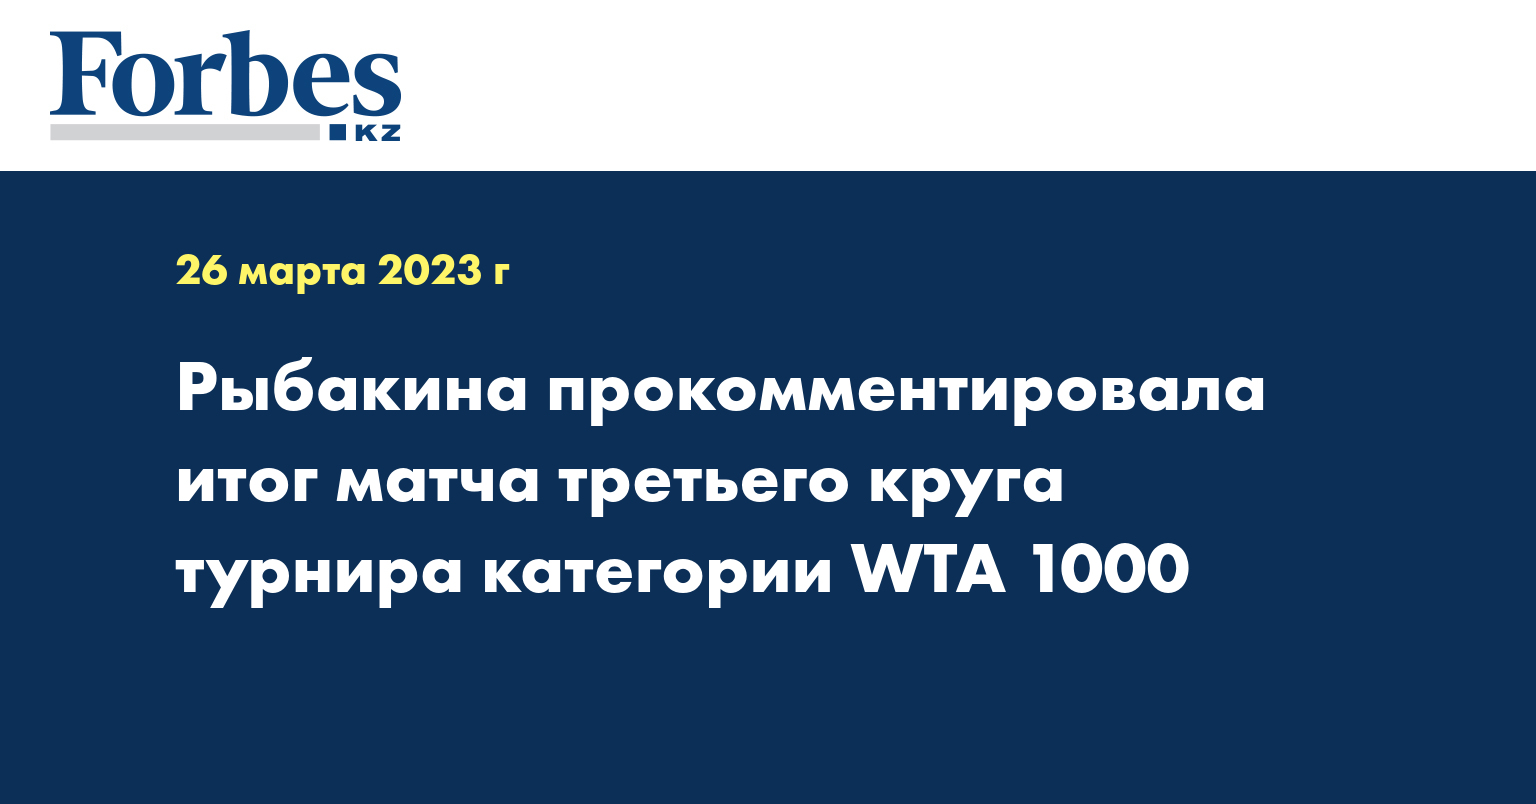 Рыбакина прокомментировала итог матча третьего круга турнира категории WTA 1000